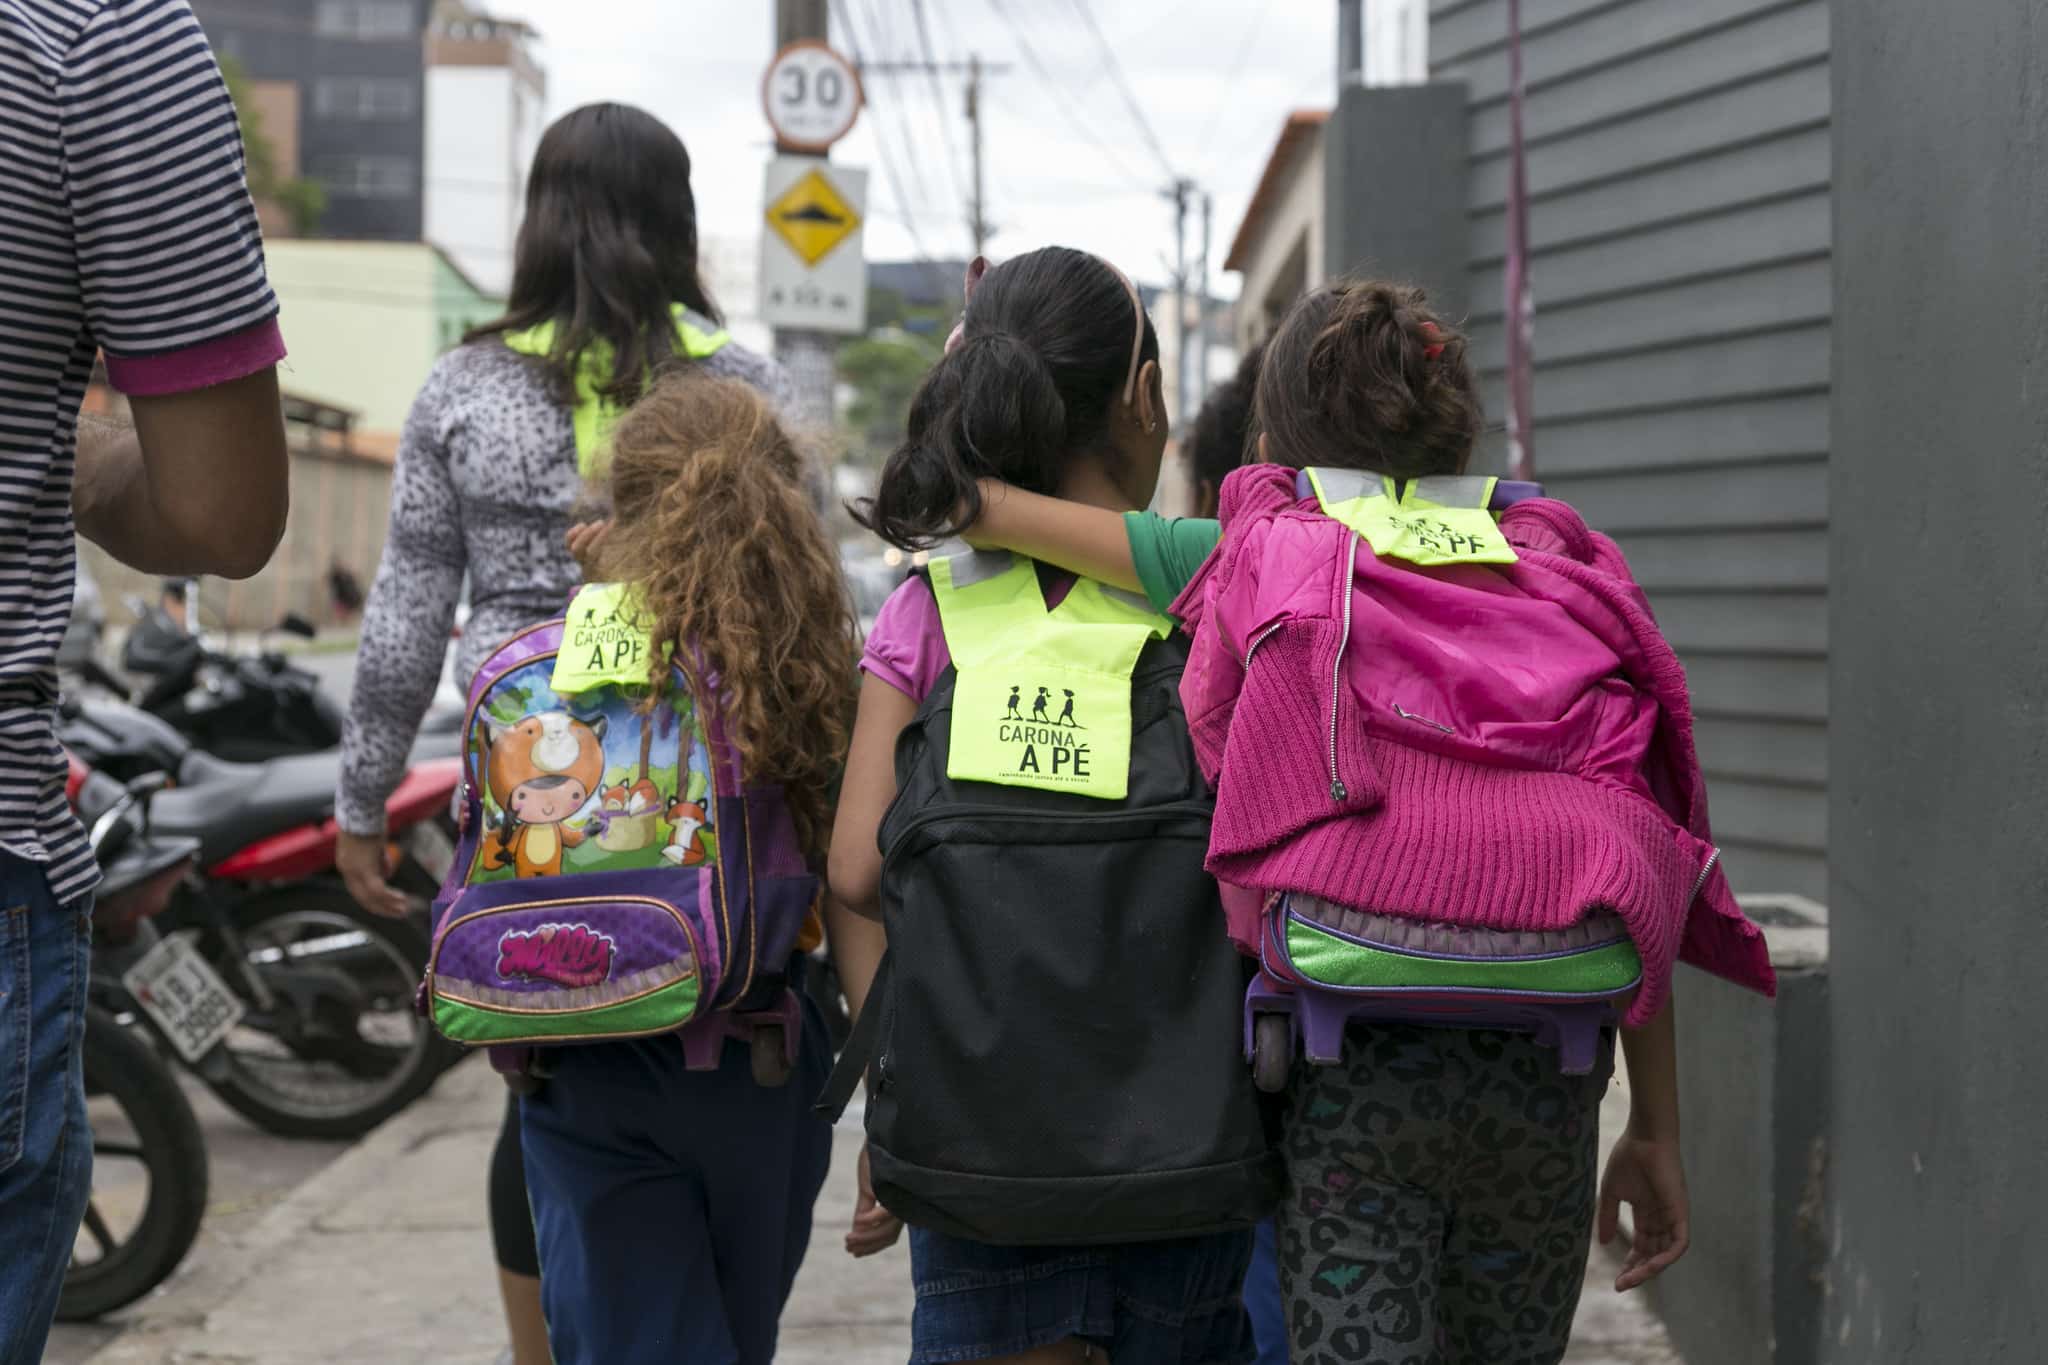 O Carona a Pé organiza percursos de ida e volta da escola para casa a pé. Foto: Divulgação.